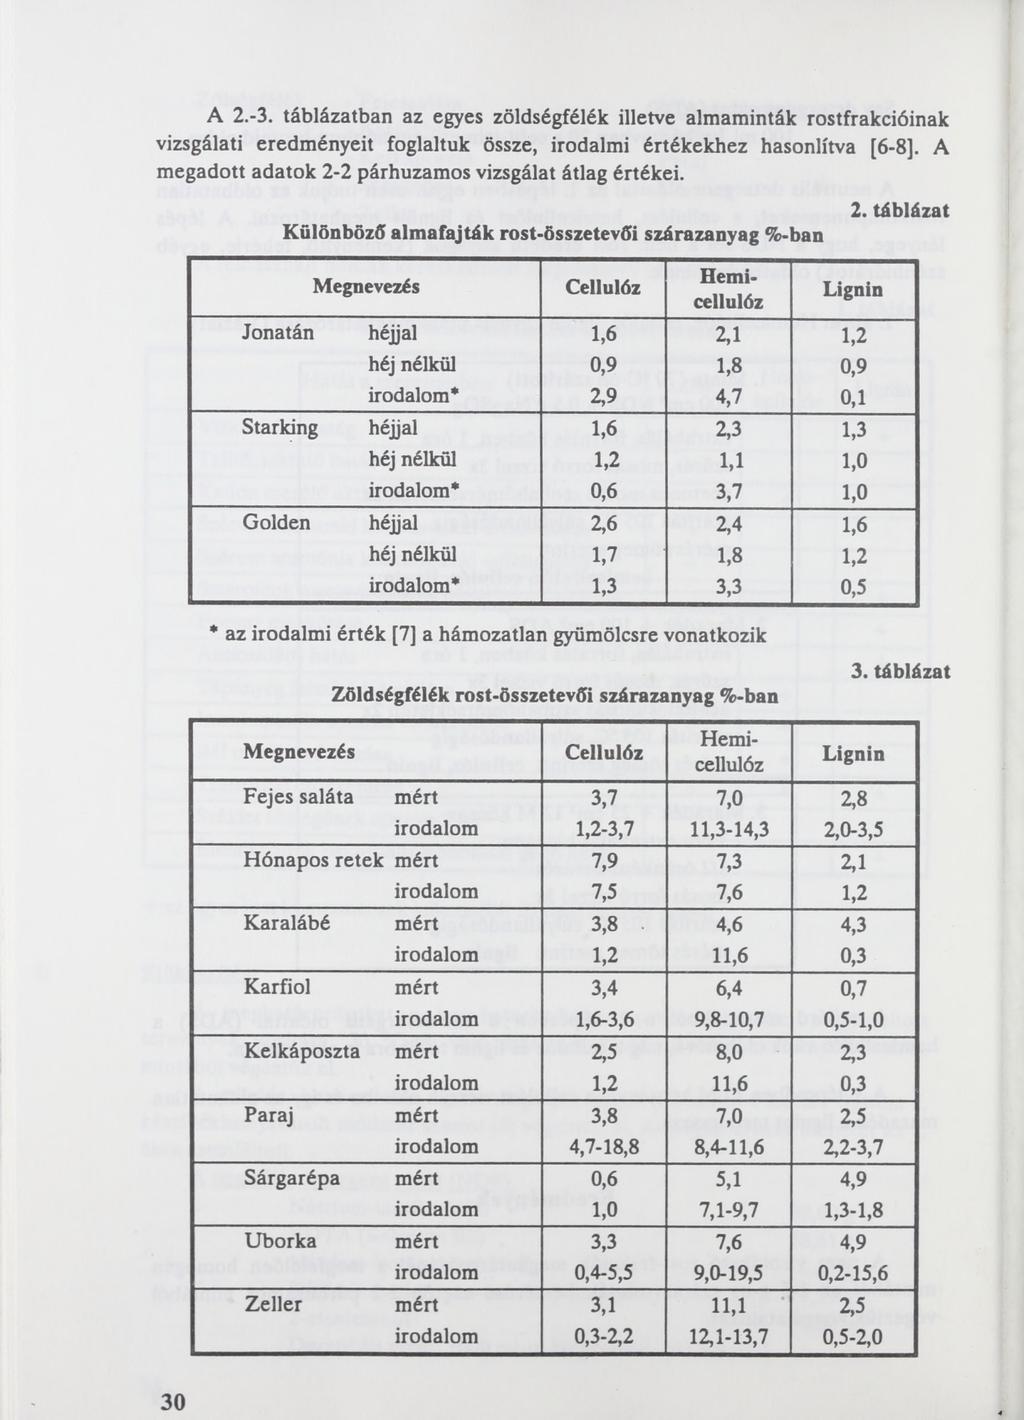 A 2.-3. táblázatban az egyes zöldségfélék illetve almaminták rostfrakcióinak vizsgálati eredményeit foglaltuk össze, irodalmi értékekhez hasonlítva [6-8].